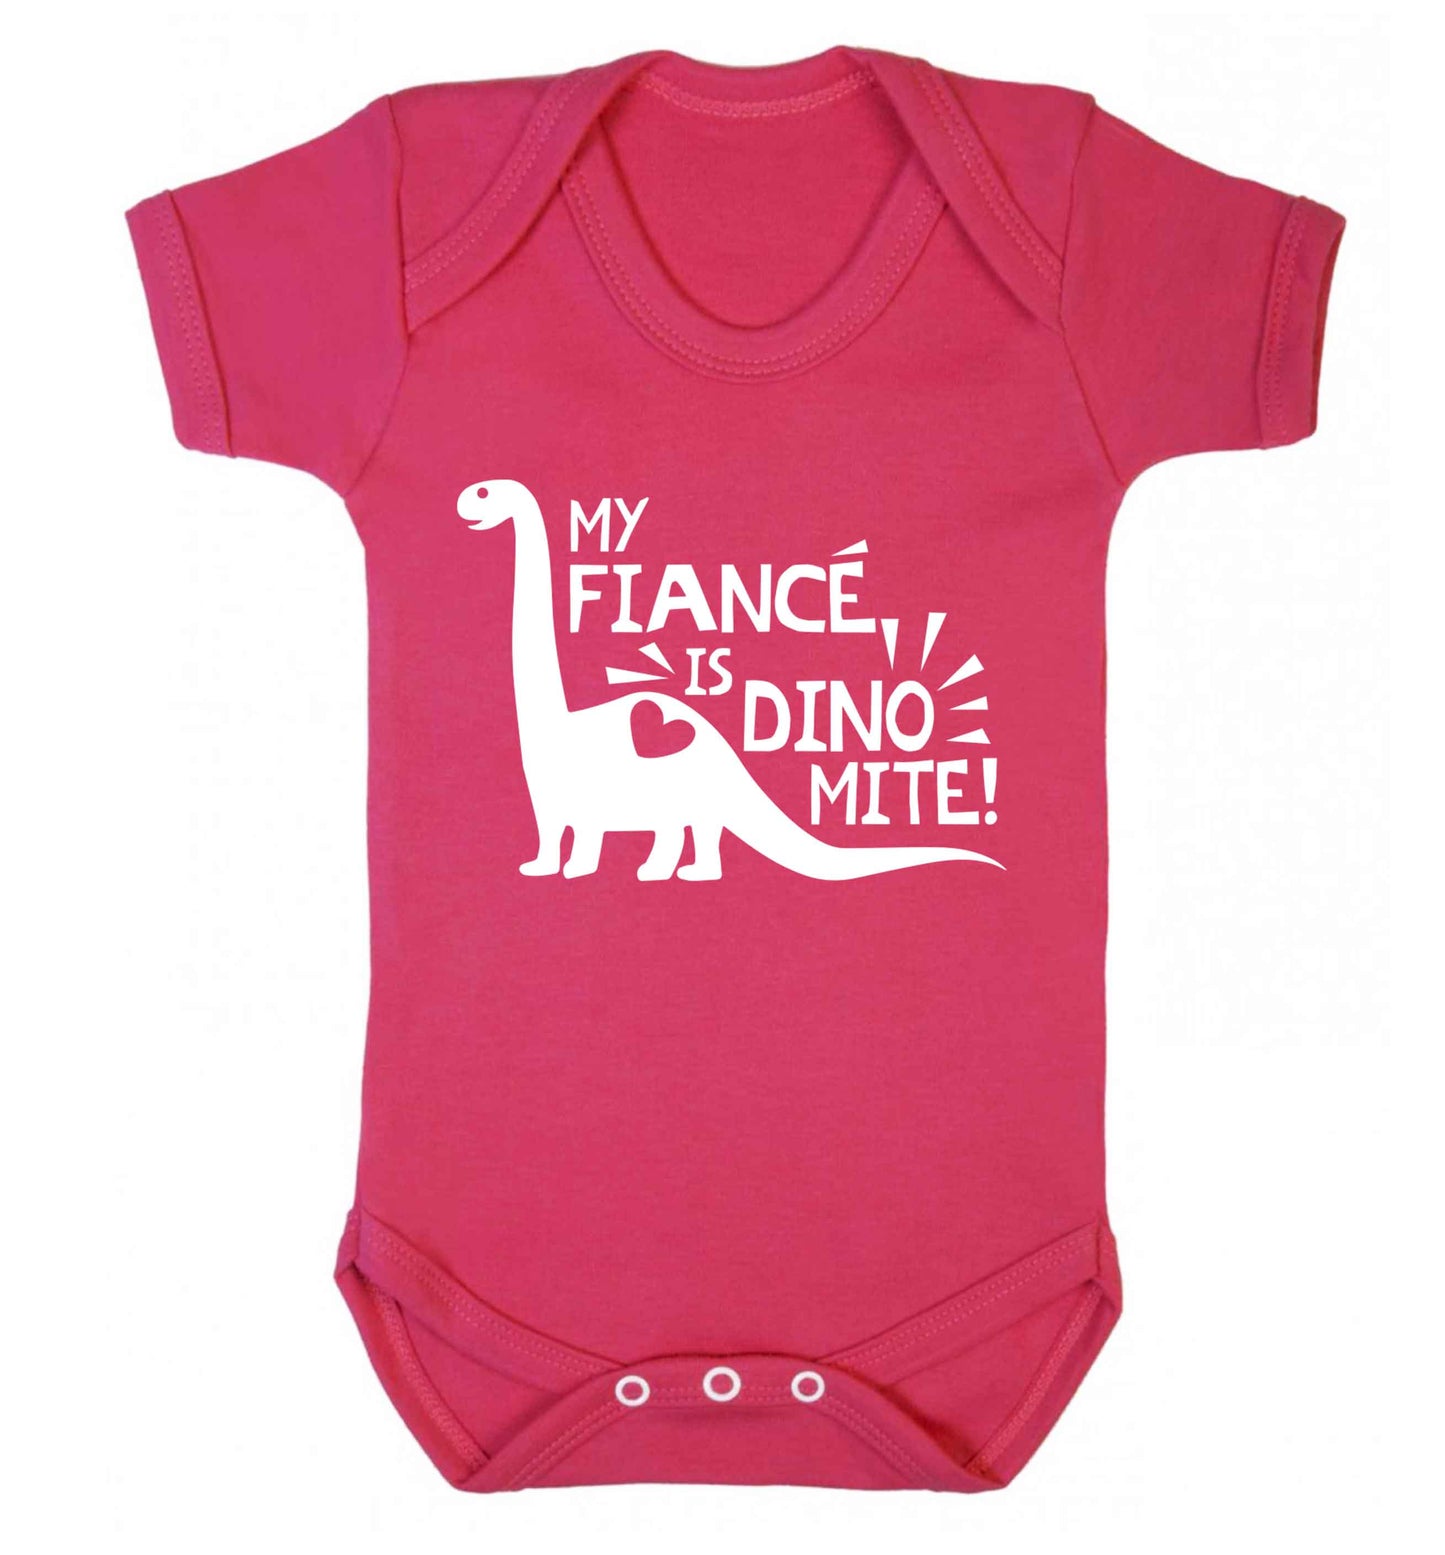 My fiance is dinomite! Baby Vest dark pink 18-24 months